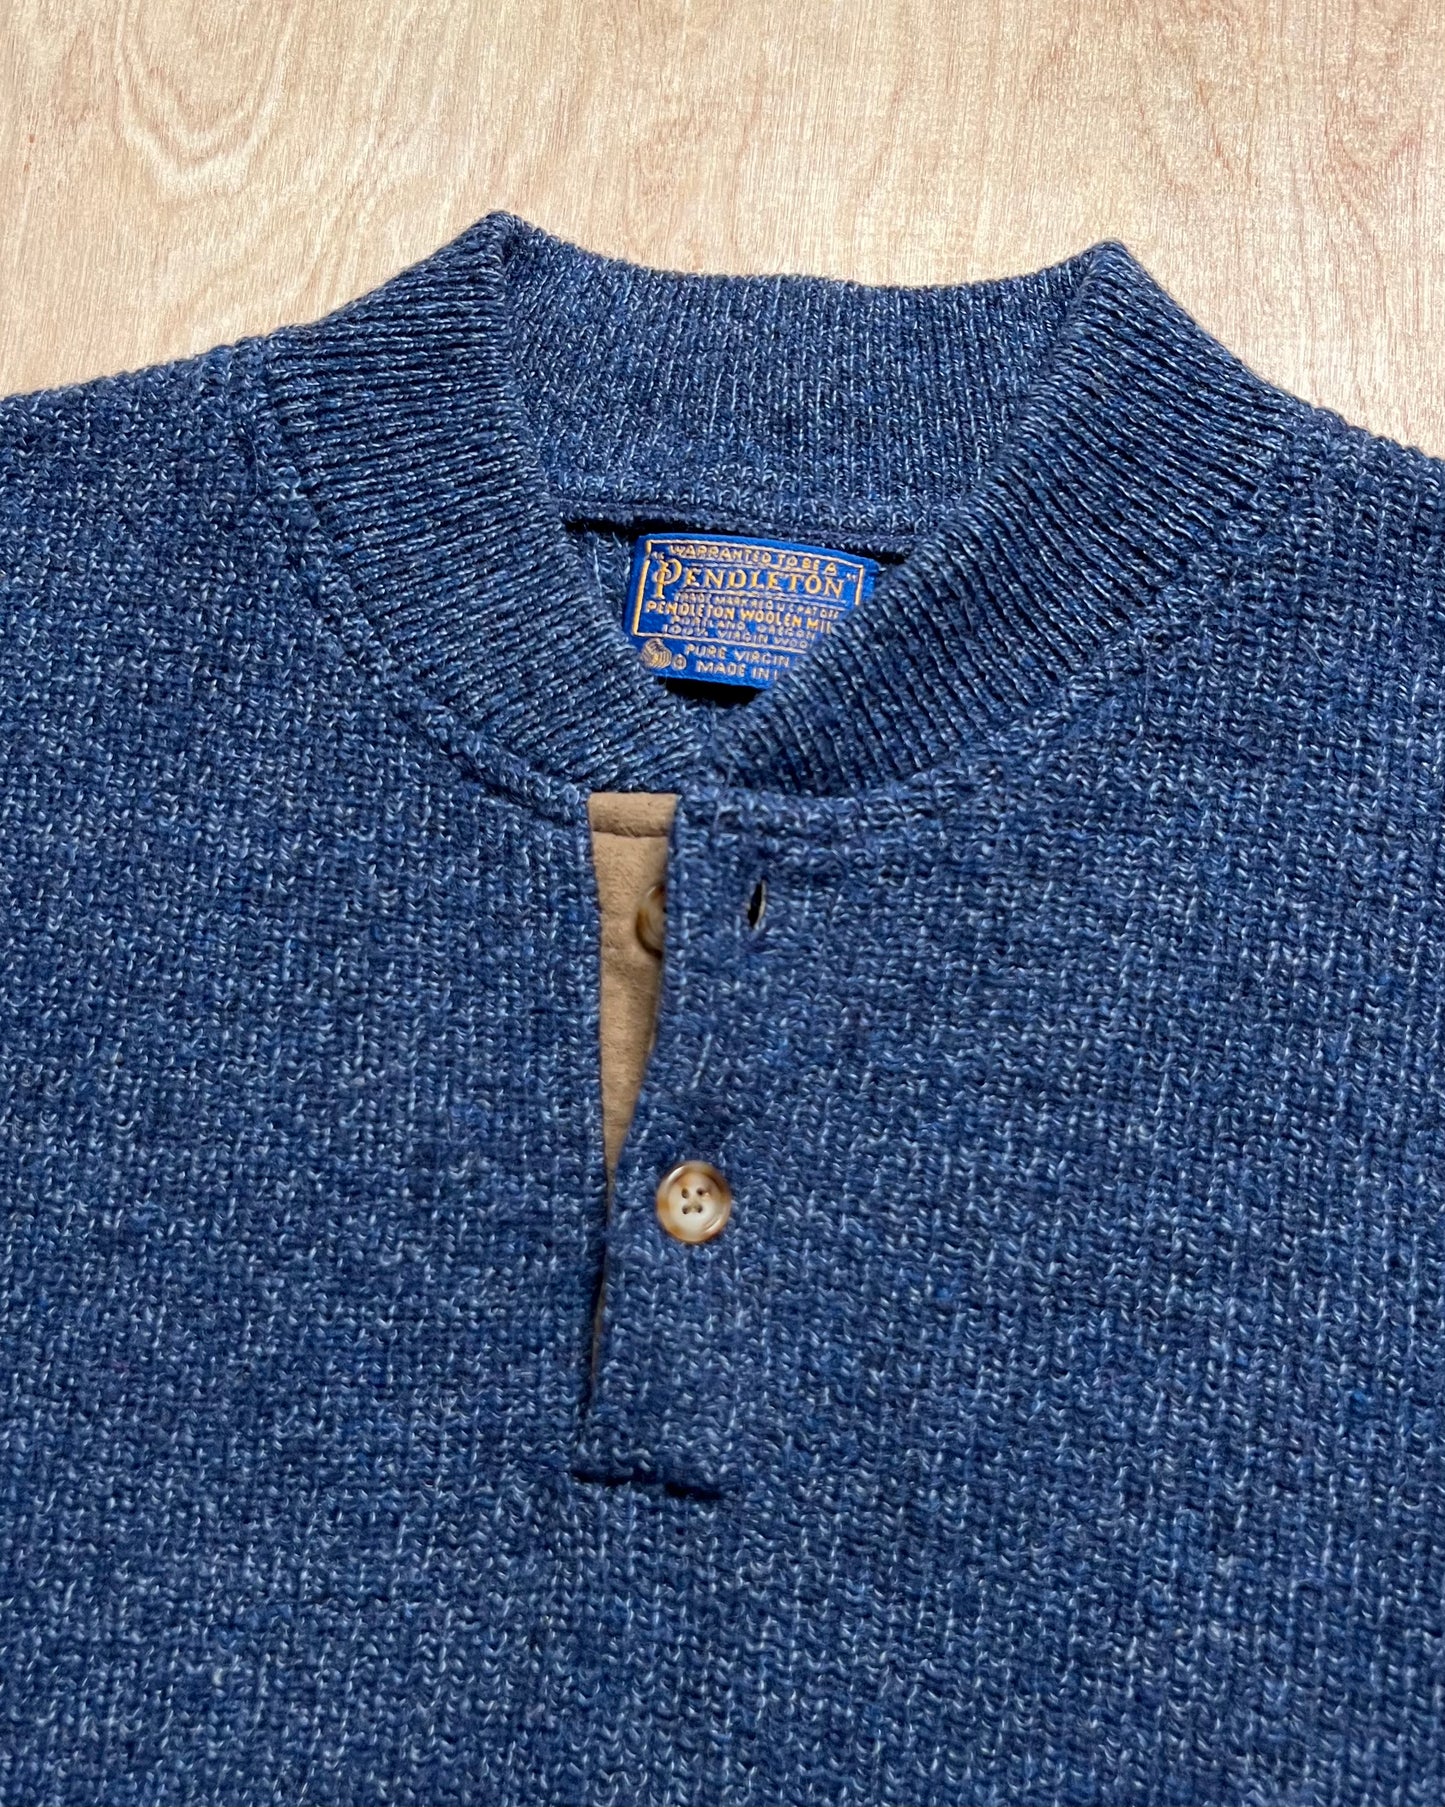 1990's Pendleton 2 Button Sweater